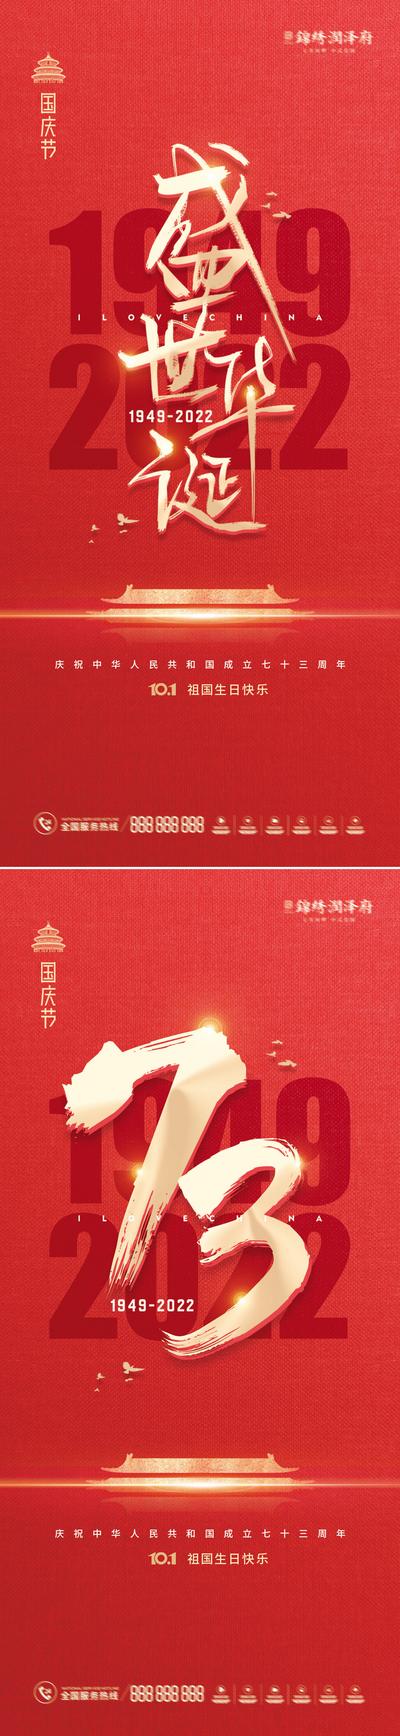 南门网 海报 房地产 公历节日 国庆节 十一 华诞 73周年 数字 红金